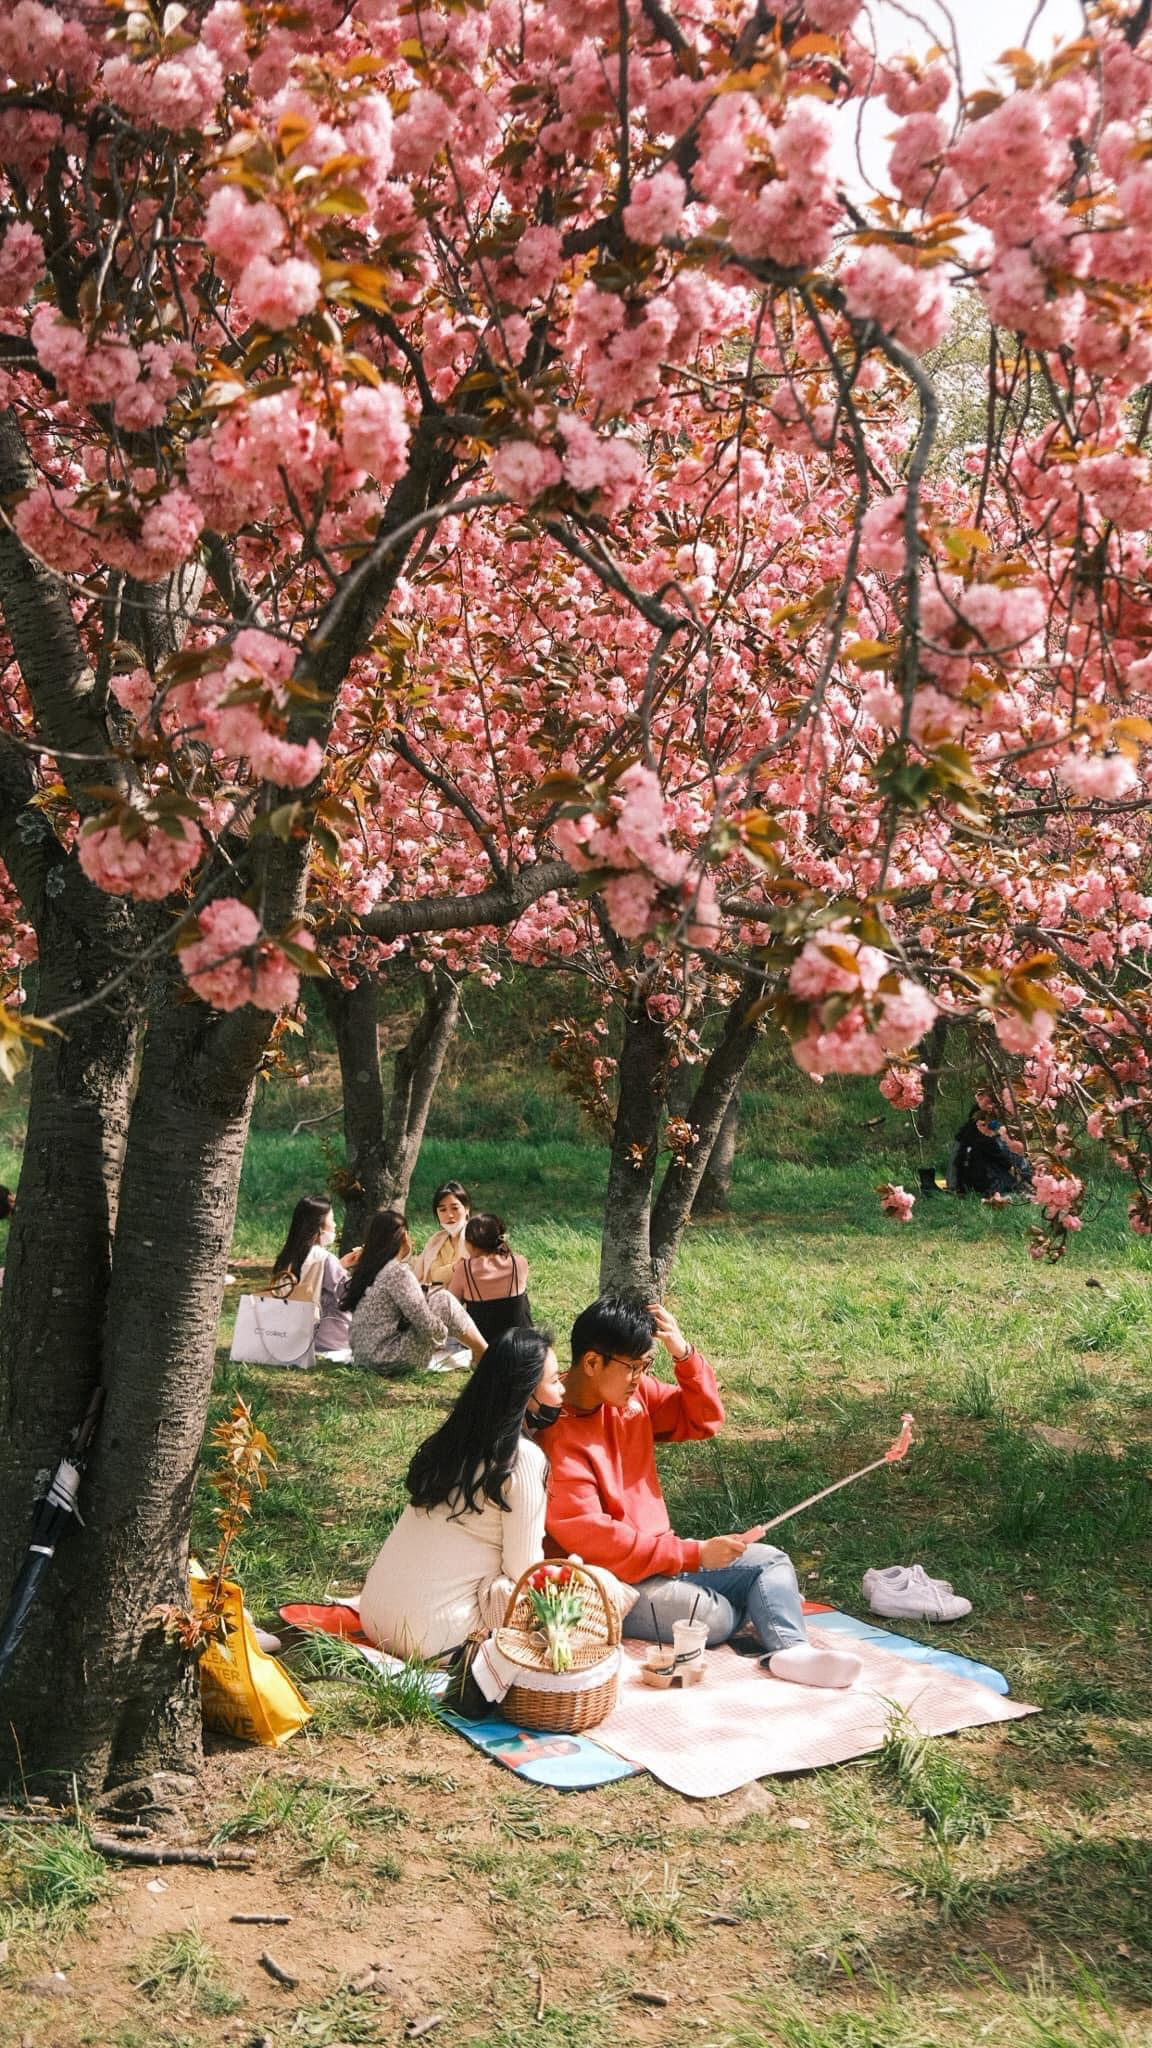 Hoa anh đào nở rộ khắp đường phố Hàn Quốc, cảnh đẹp không thể tả bằng lời